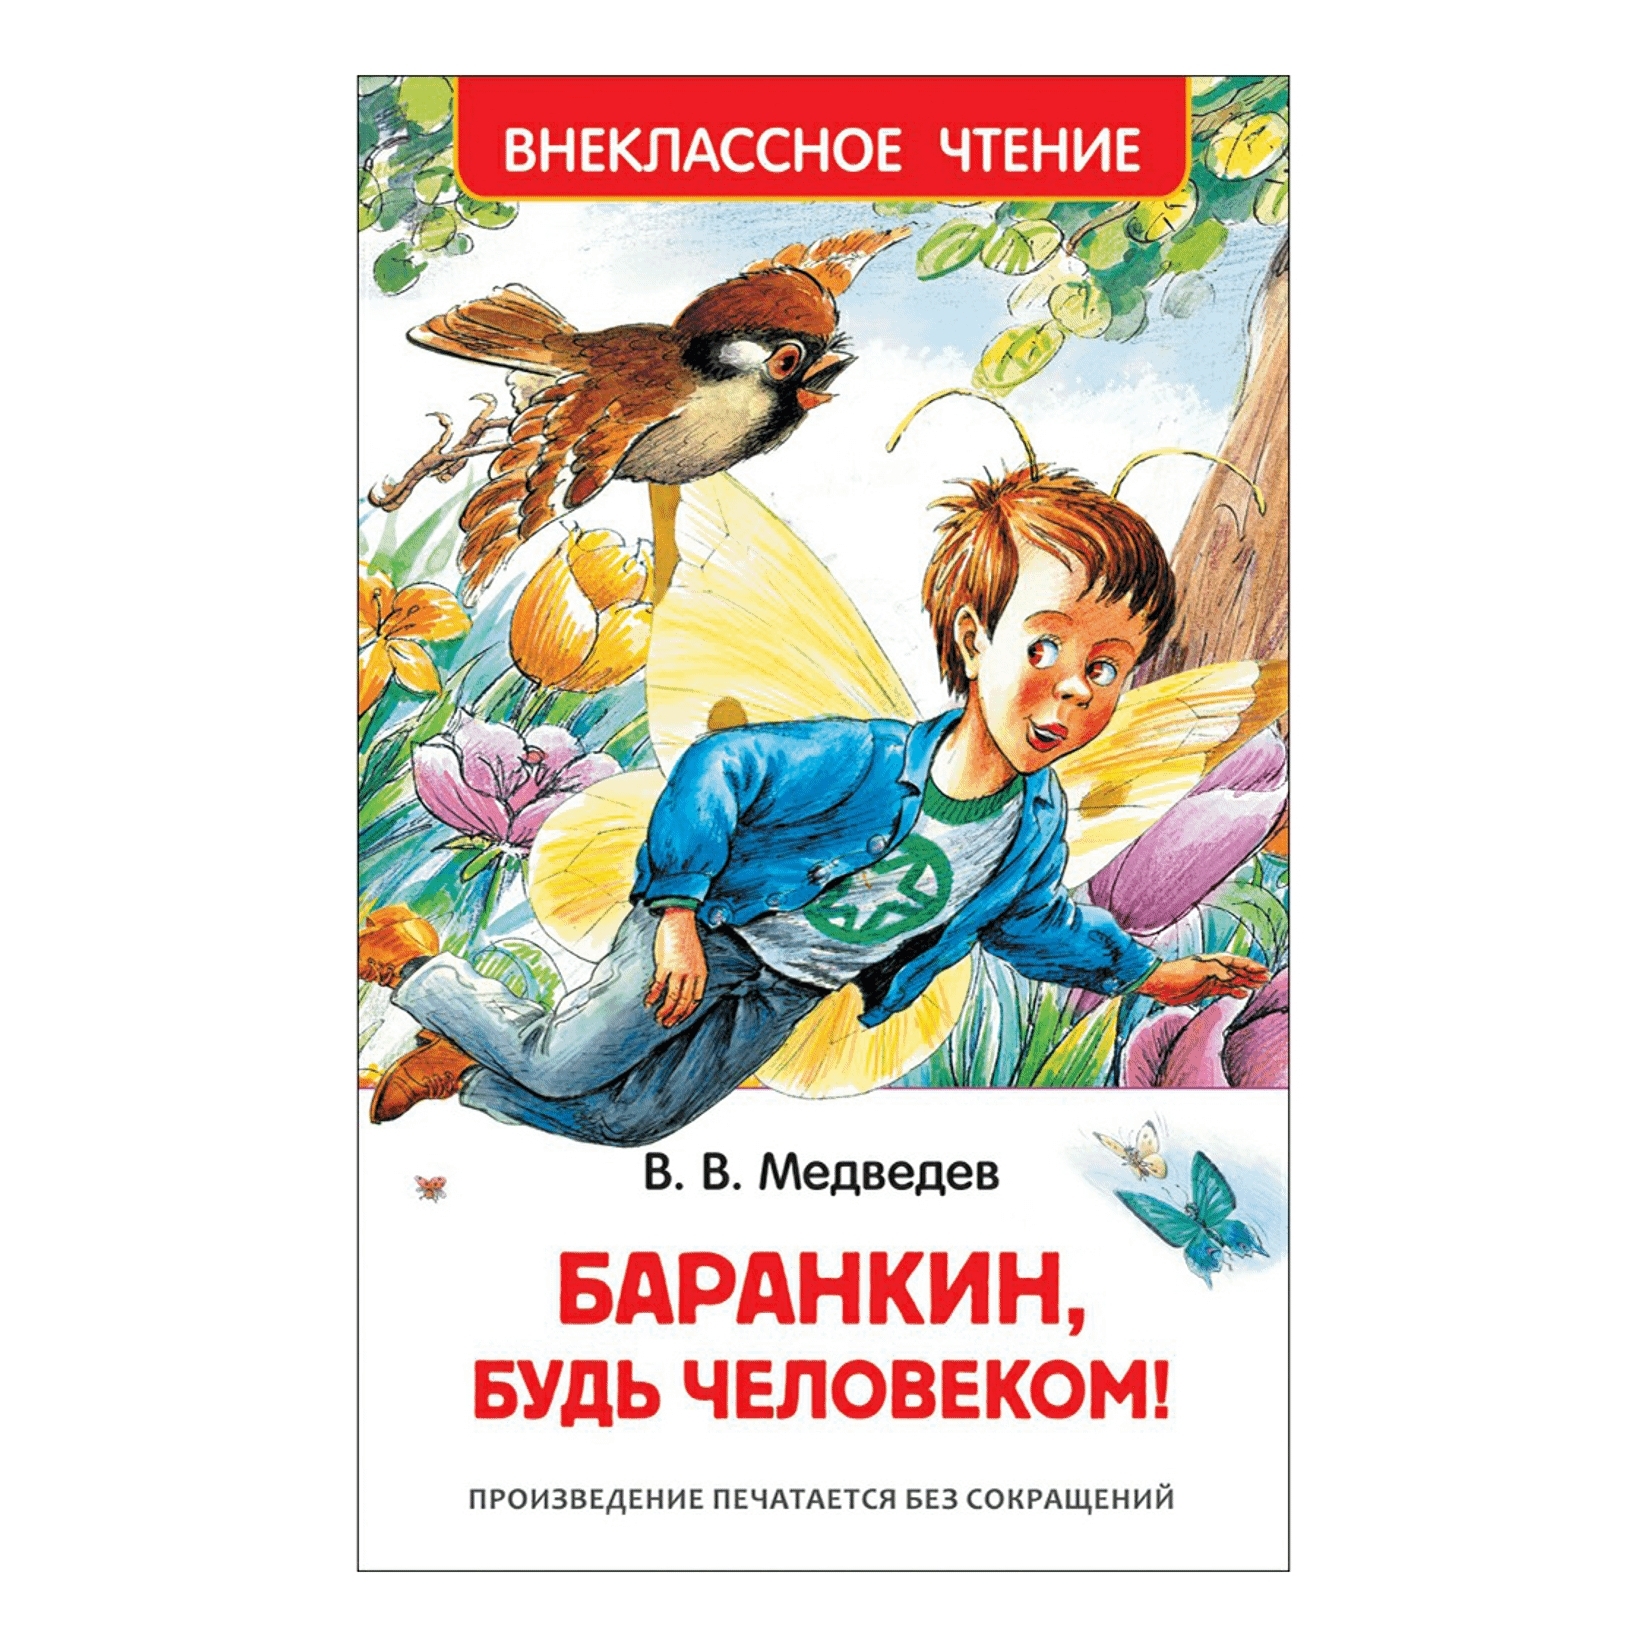 Книга Медведева Баранкин будь человеком. Медведев Баранкин будь человеком обложка.